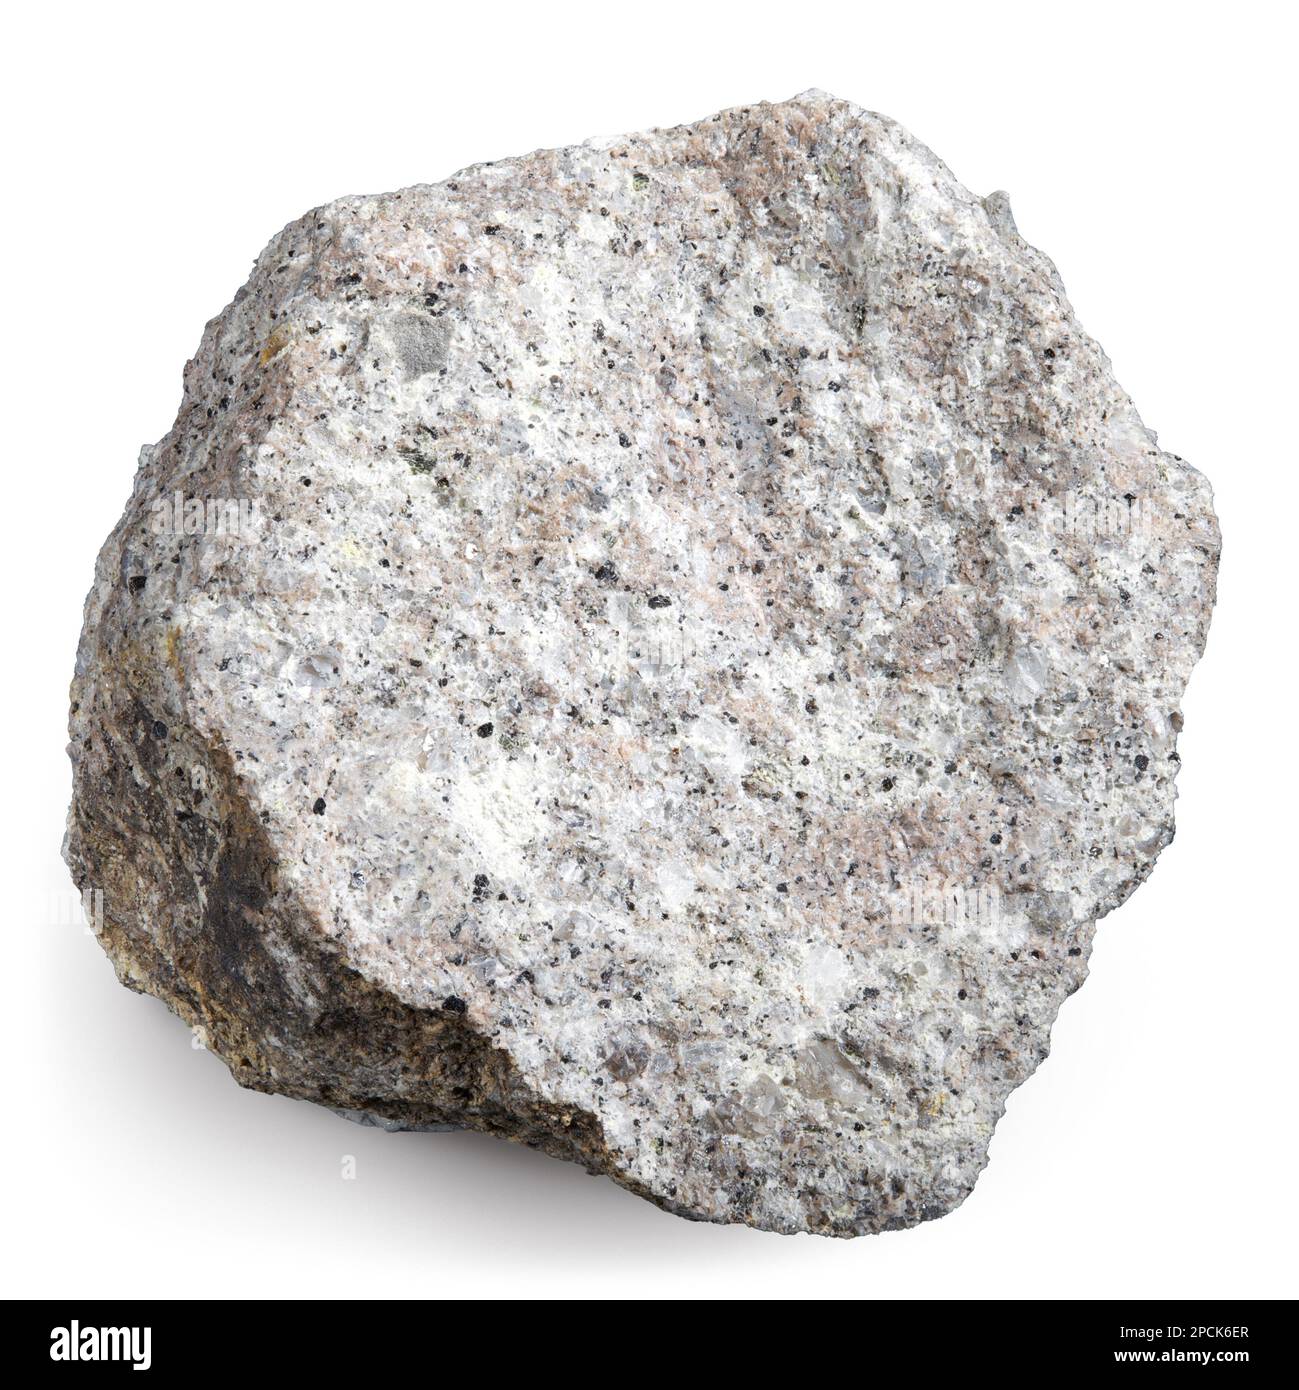 Volcanic Tuff (Igneous Rock) Stock Photo